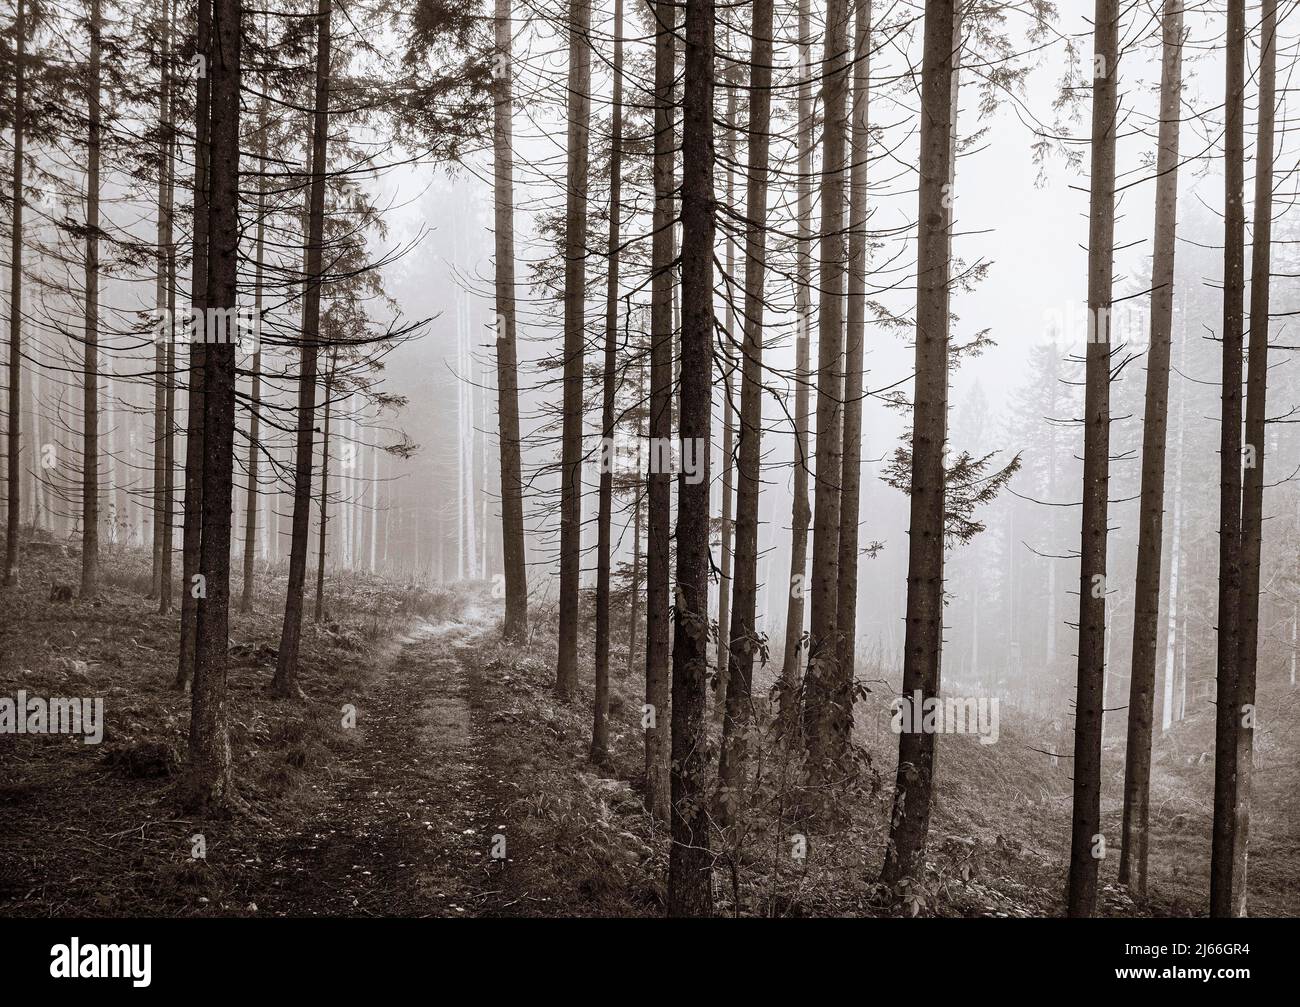 Sepiafarben, Forststrasse fuehrt durch einen nebeligen Nadelwald, Mondsee, Mondseeland Salzkammergut, Oberoesterreich, Oesterreich Stock Photo